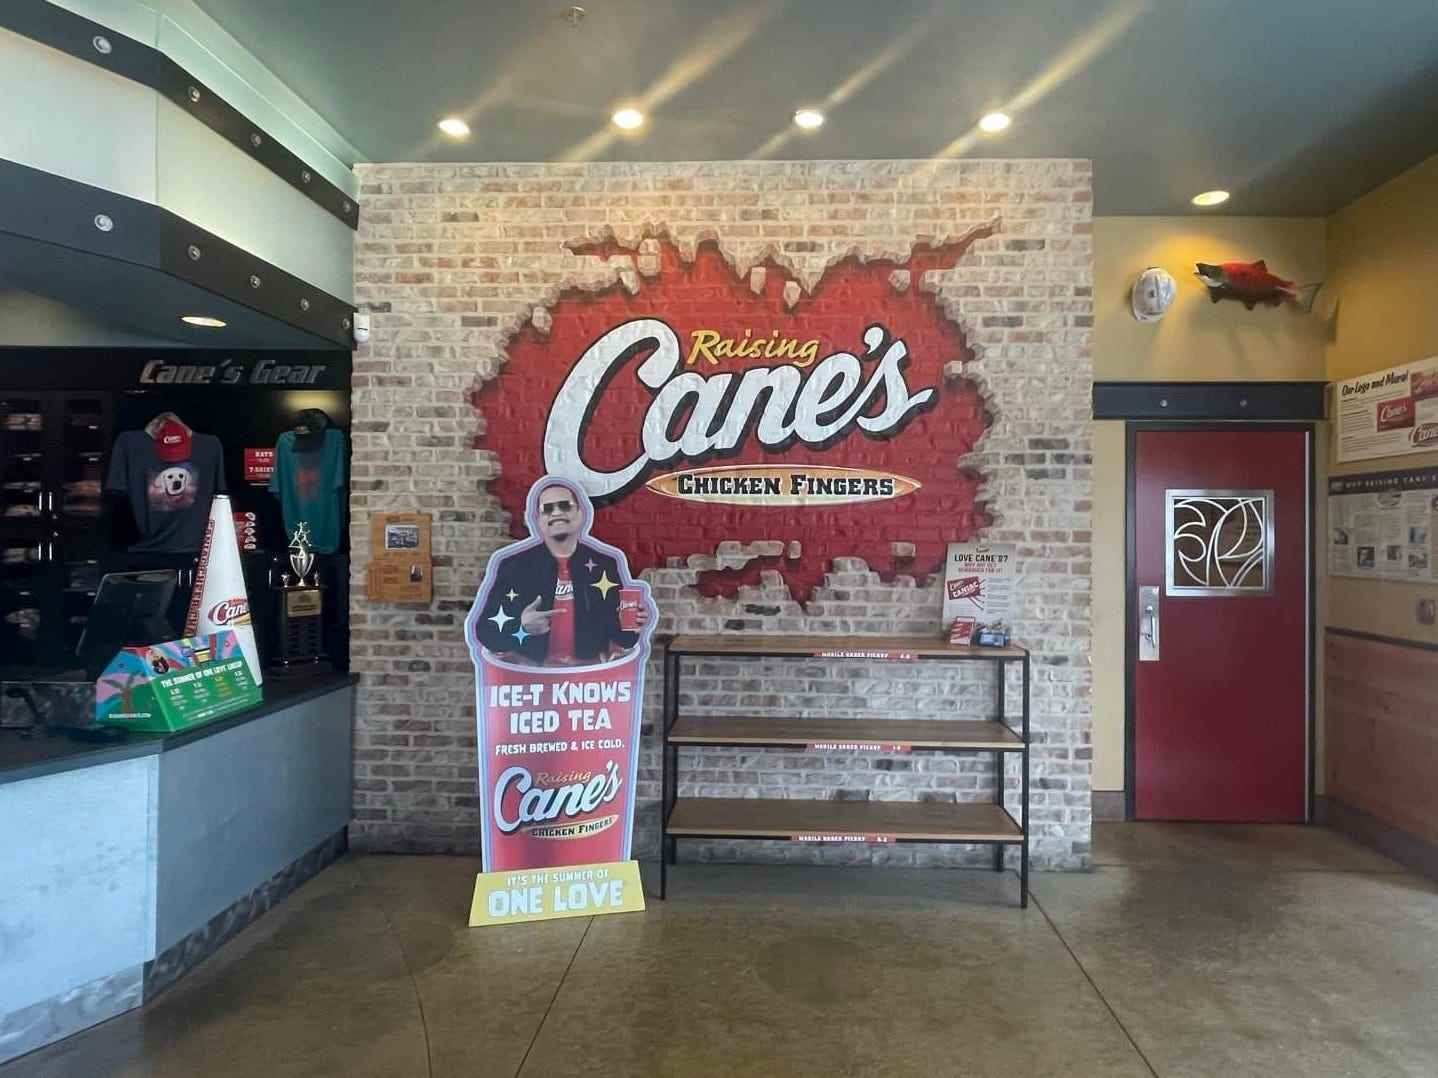 Innenraum von Raising Cane's mit einem Ausschnitt von Ice-T nach Register